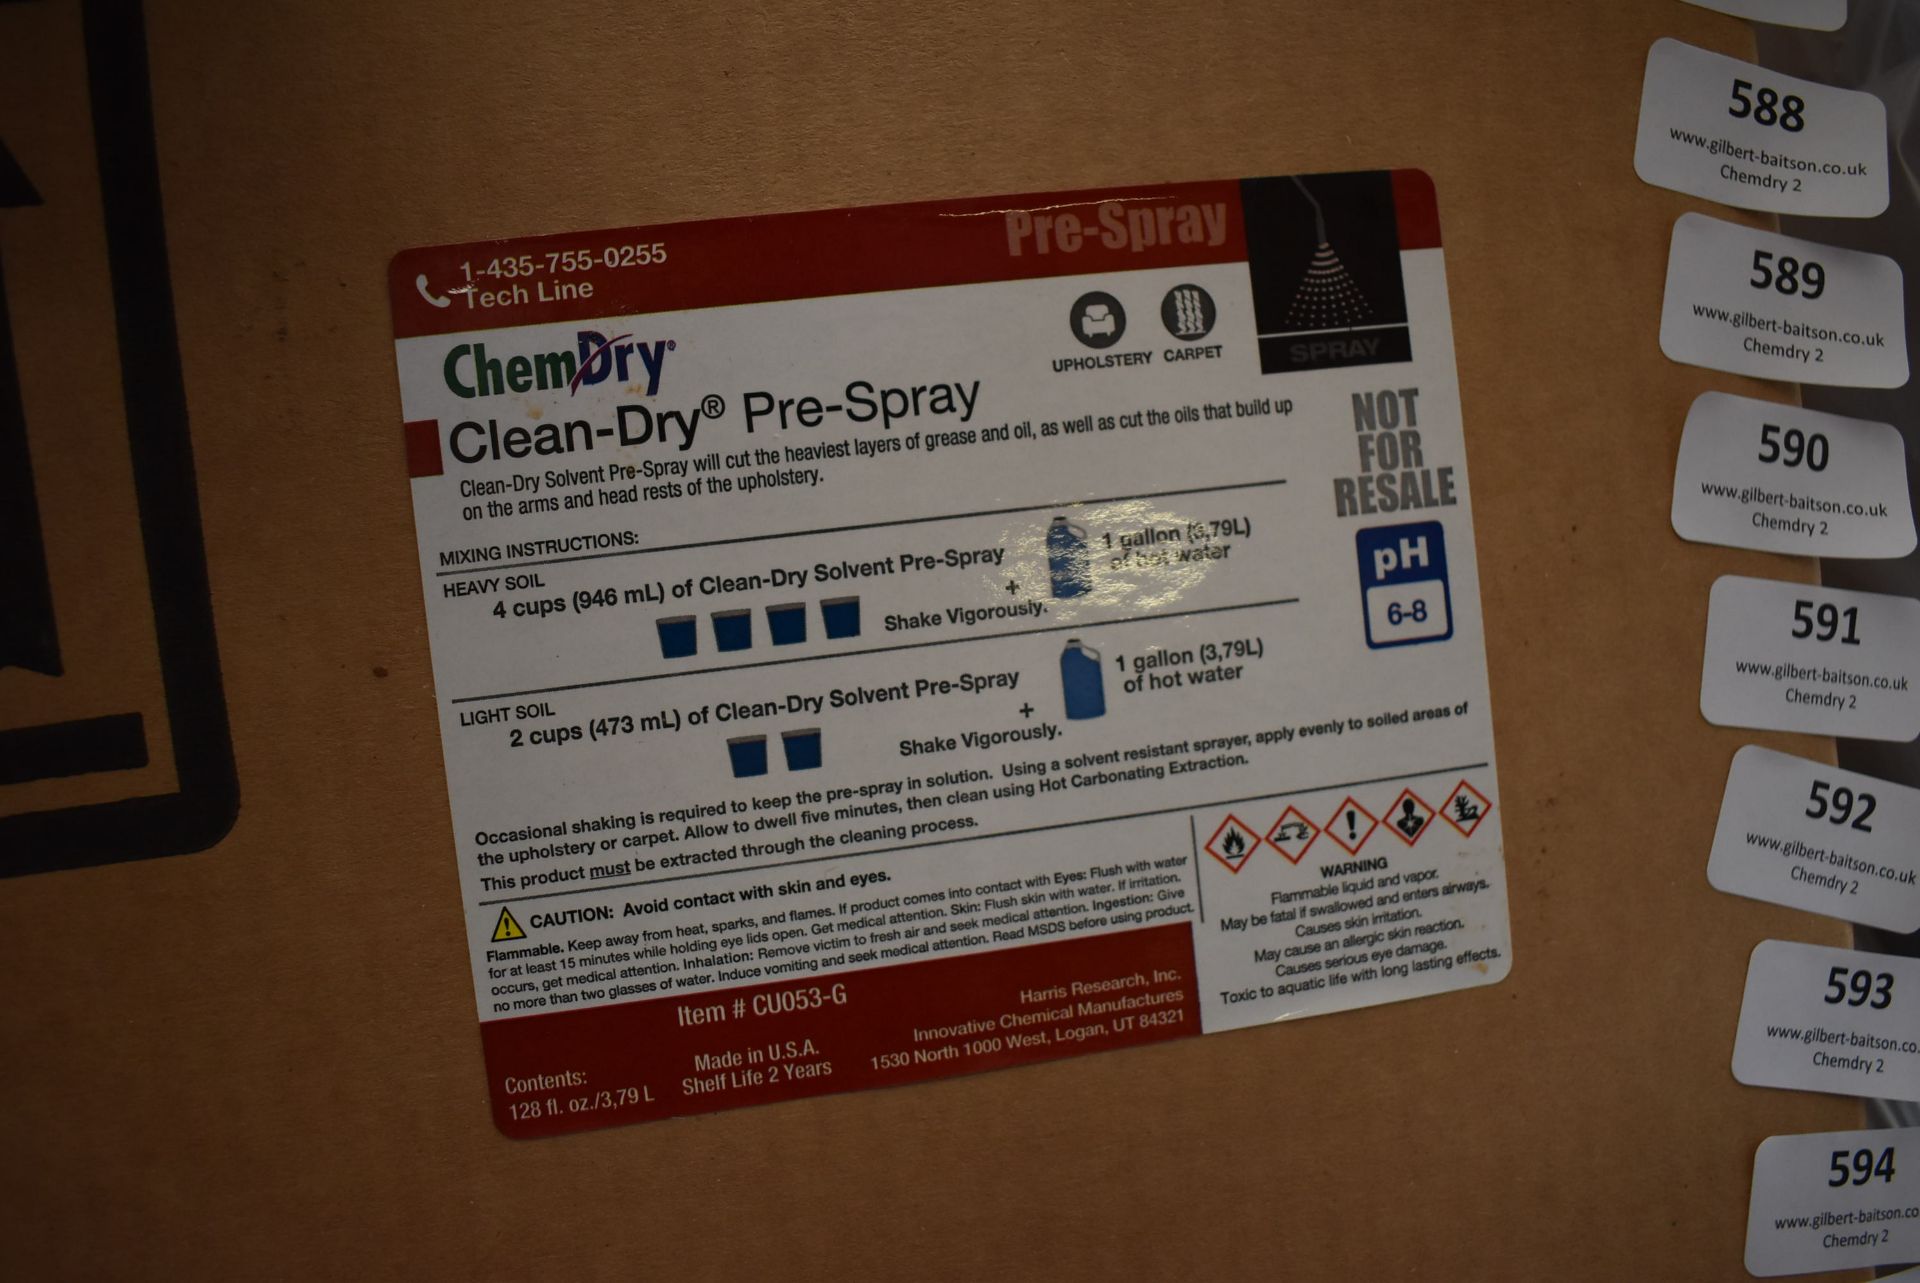 *4x 3.79L of ChemDry Clean-Dry Pre-Spray